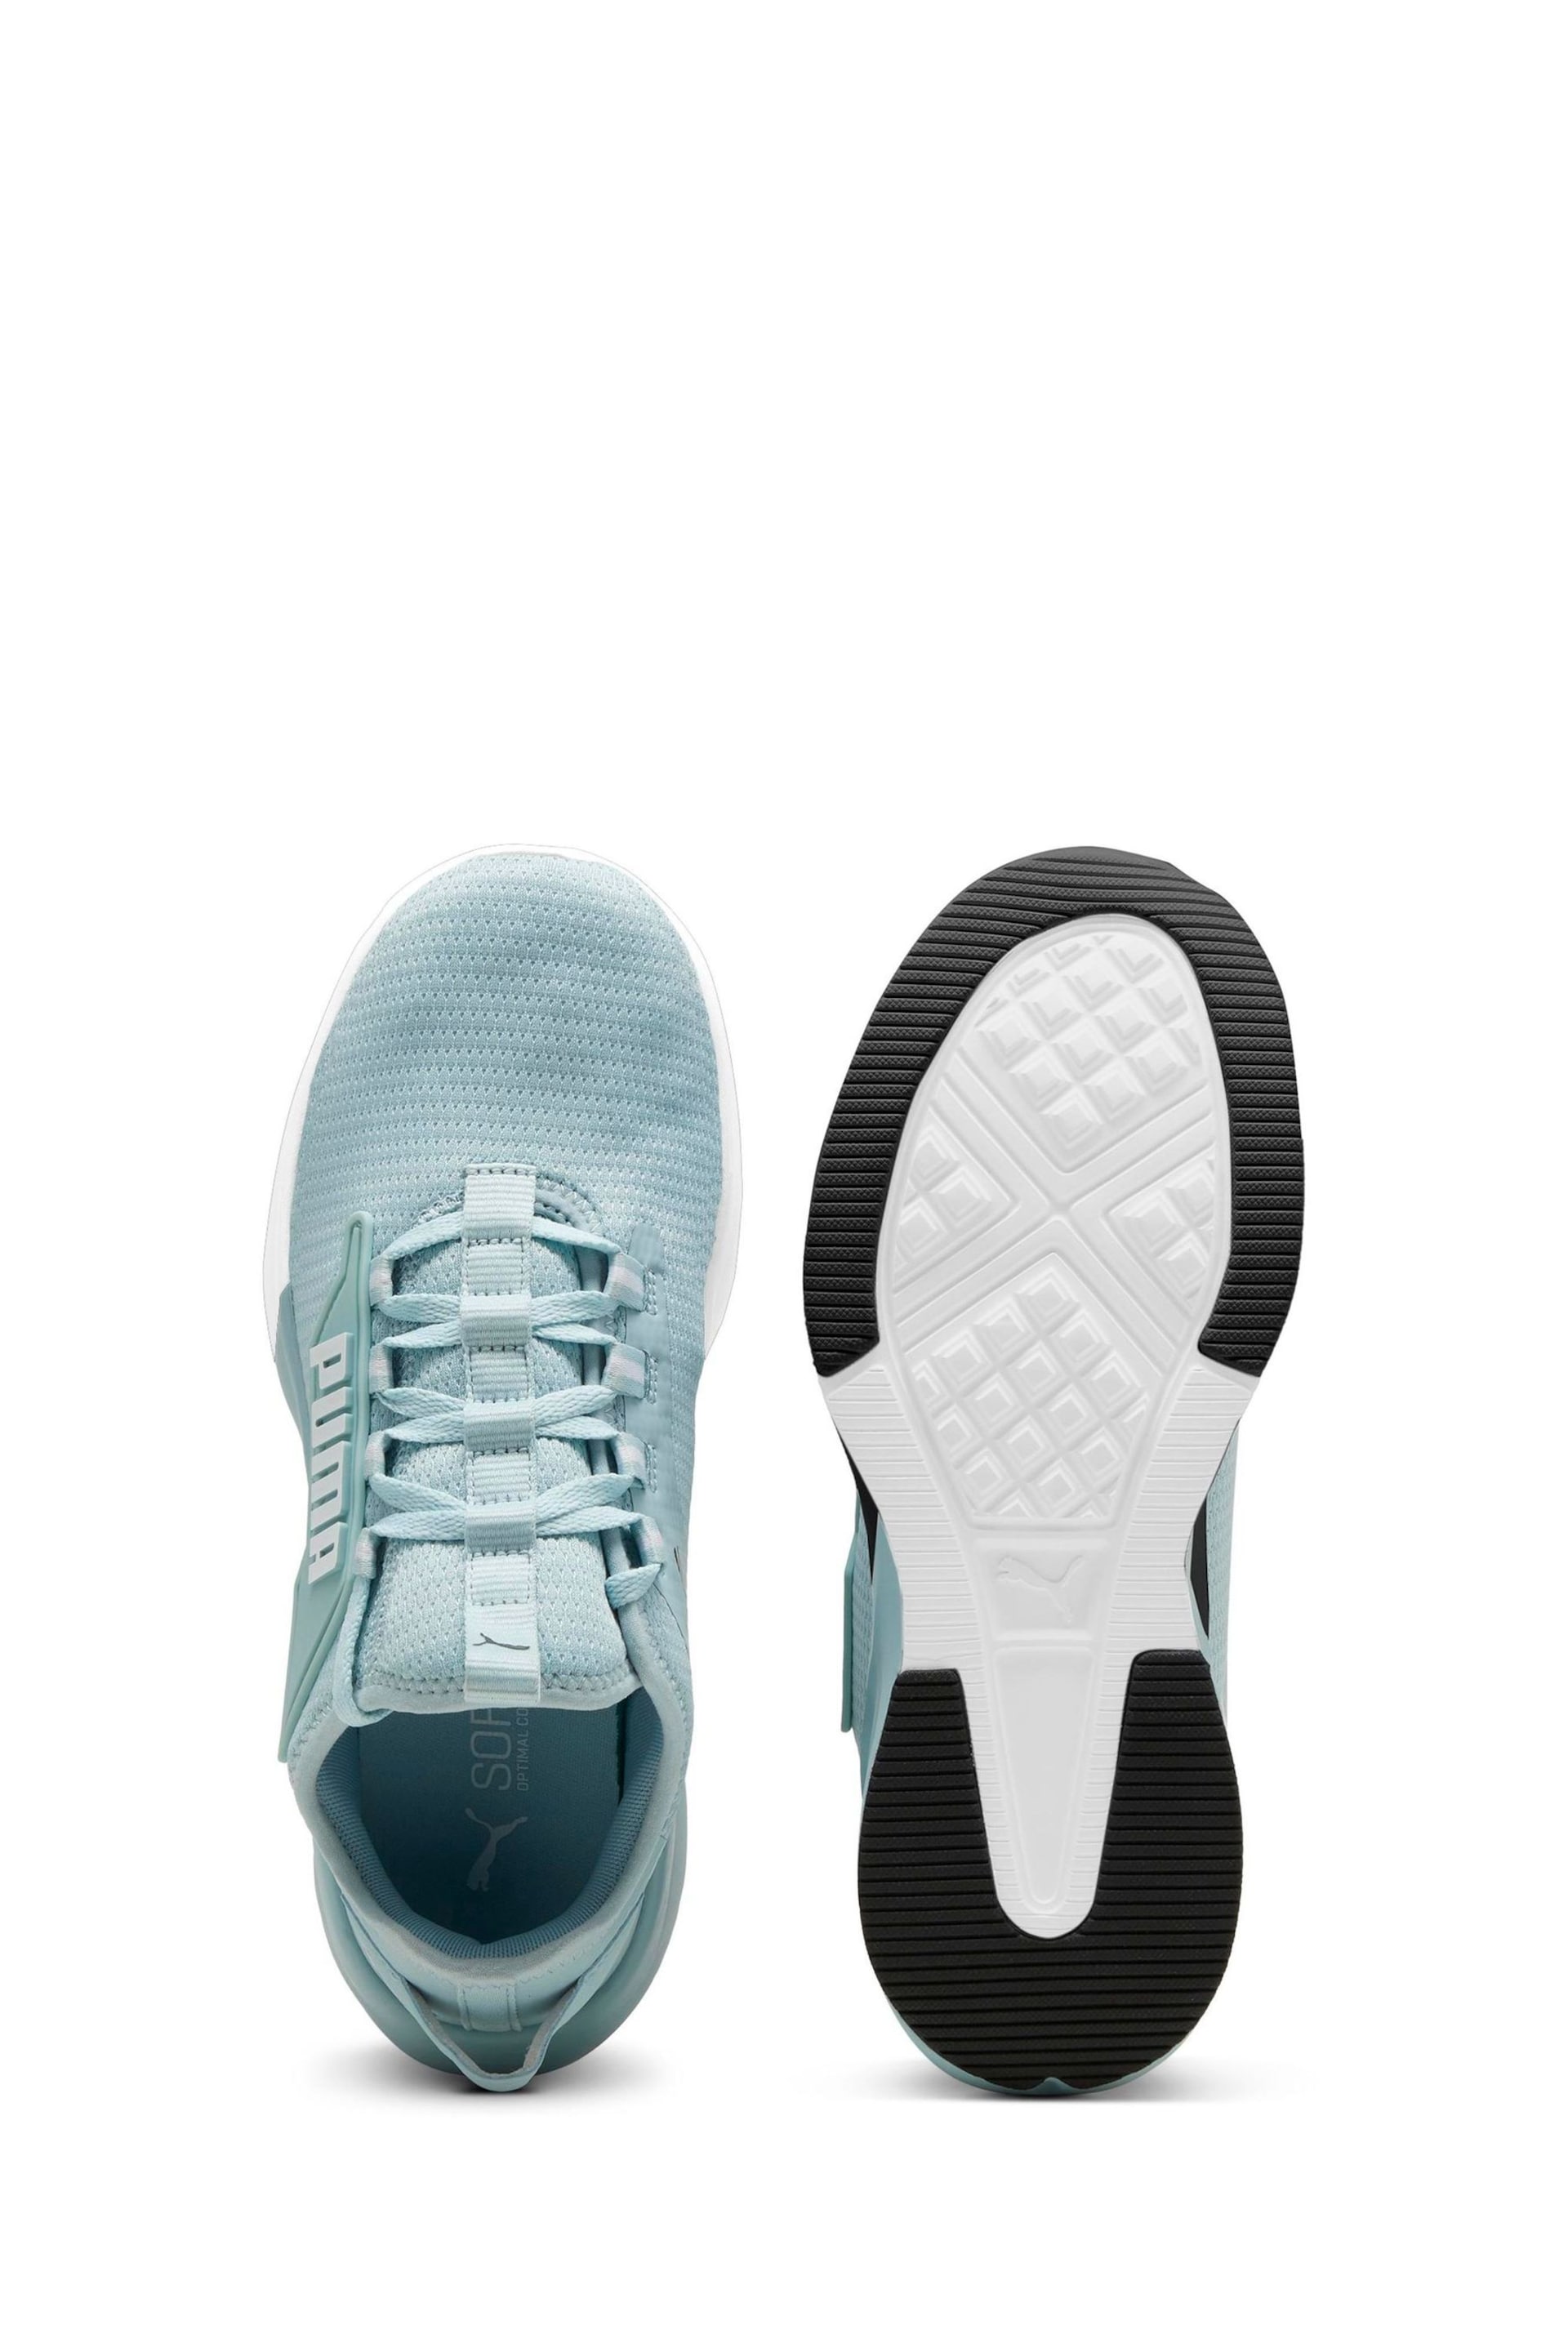 Puma Blue Retaliate 2 Unisex Running Shoes - Image 3 of 6